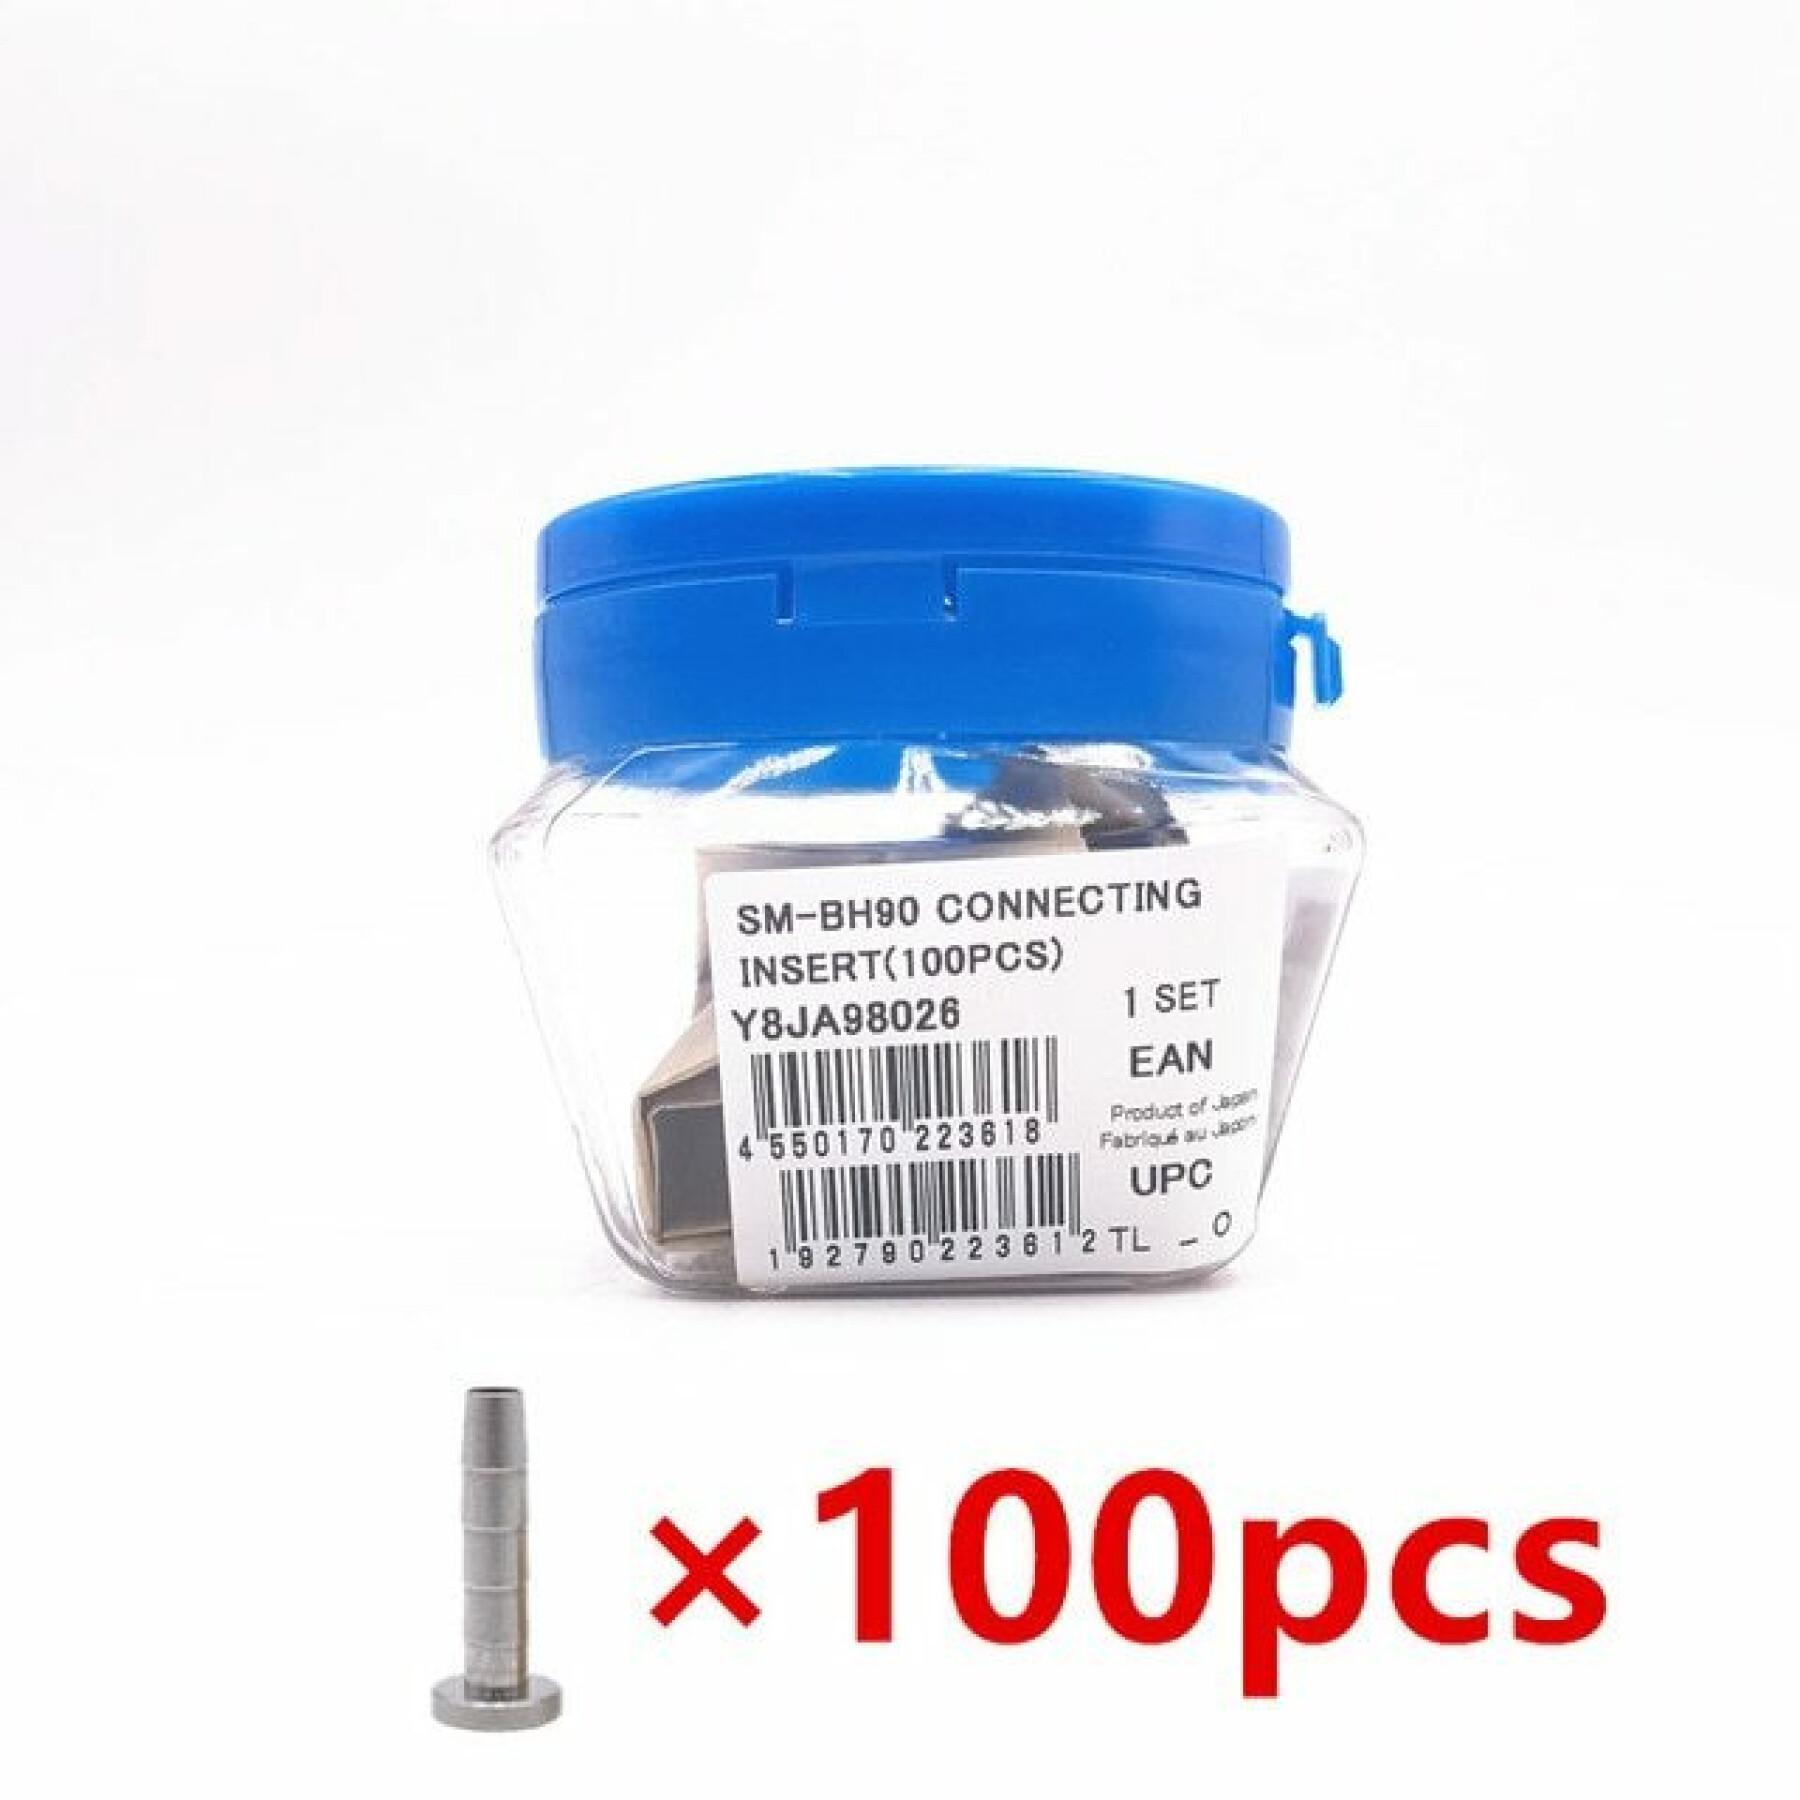 Confezione da 100 inserti di connessione Shimano SM-BH90